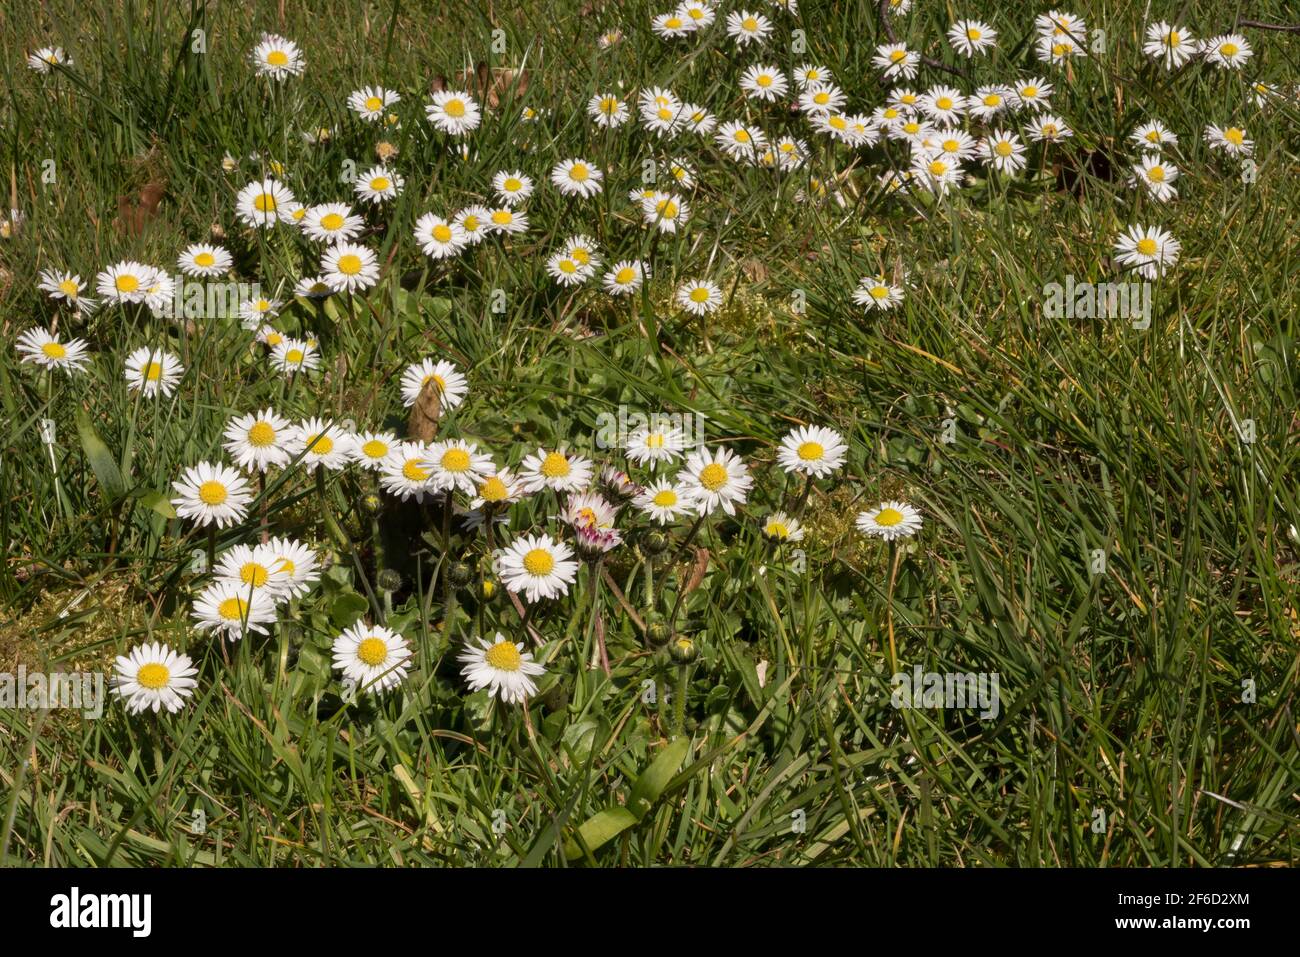 Kurze kriechende Rhizome von Gänseblümchen Bellis perennis und Rosetten Von Blättern runden Blumen sorgen dafür, dass es erfolgreich besiedelt Rasen und Kurzes Gras Stockfoto